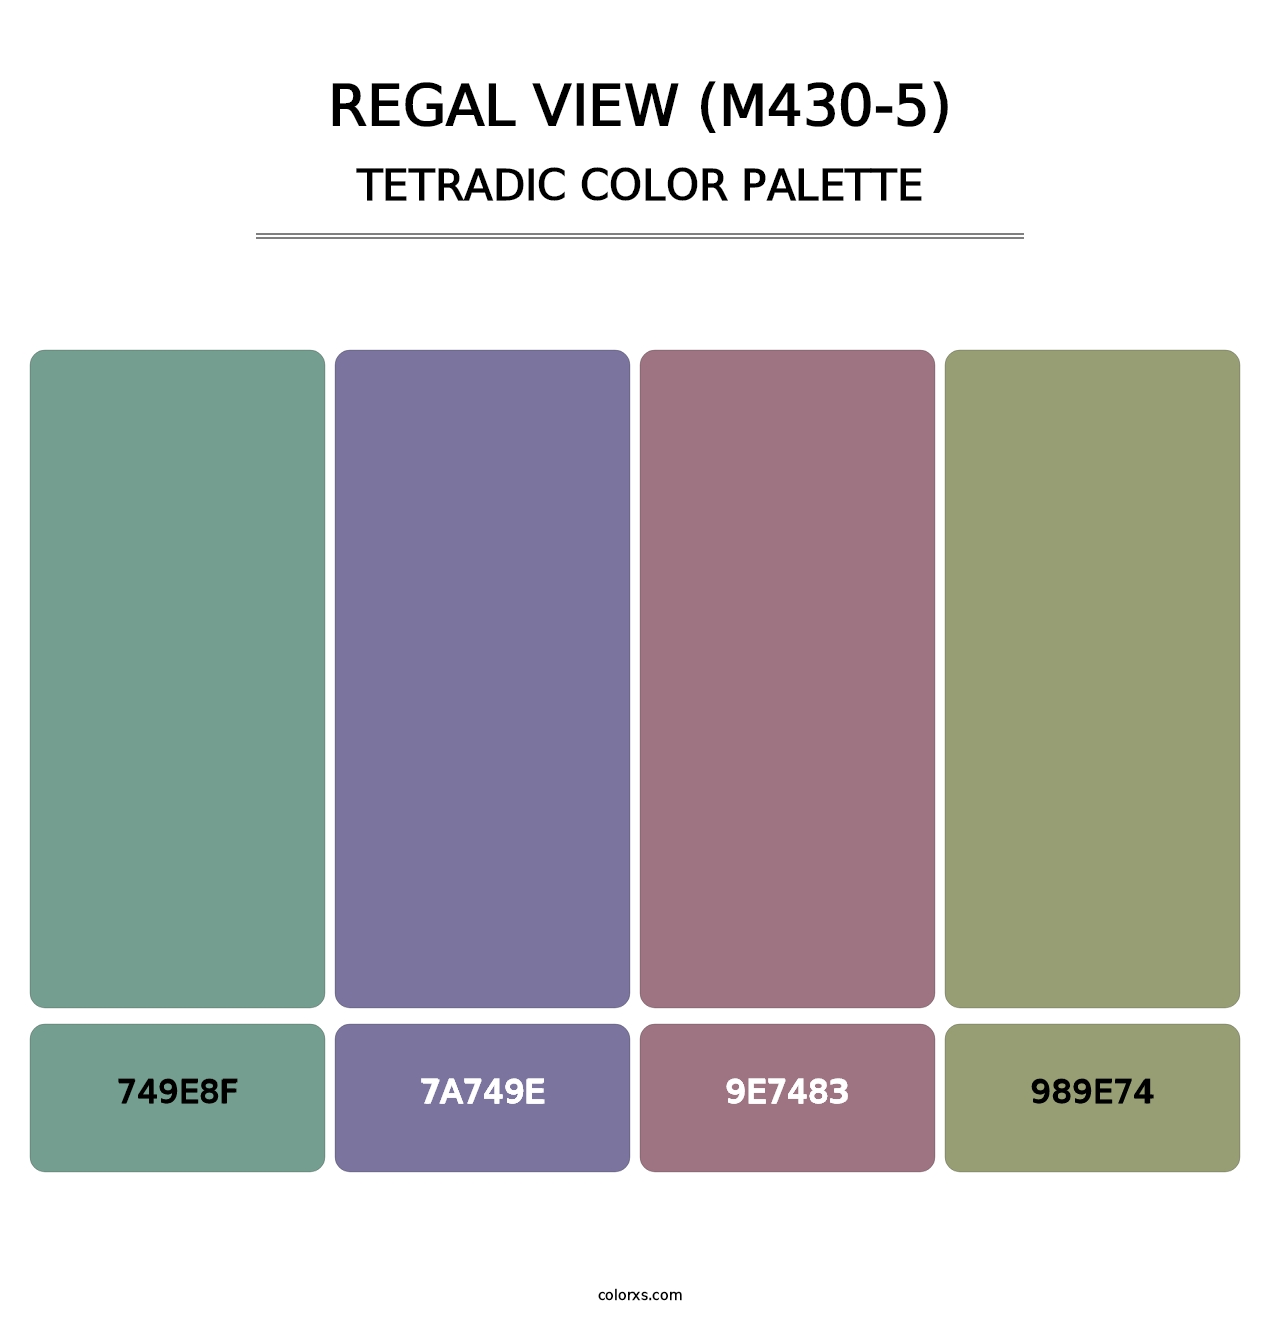 Regal View (M430-5) - Tetradic Color Palette